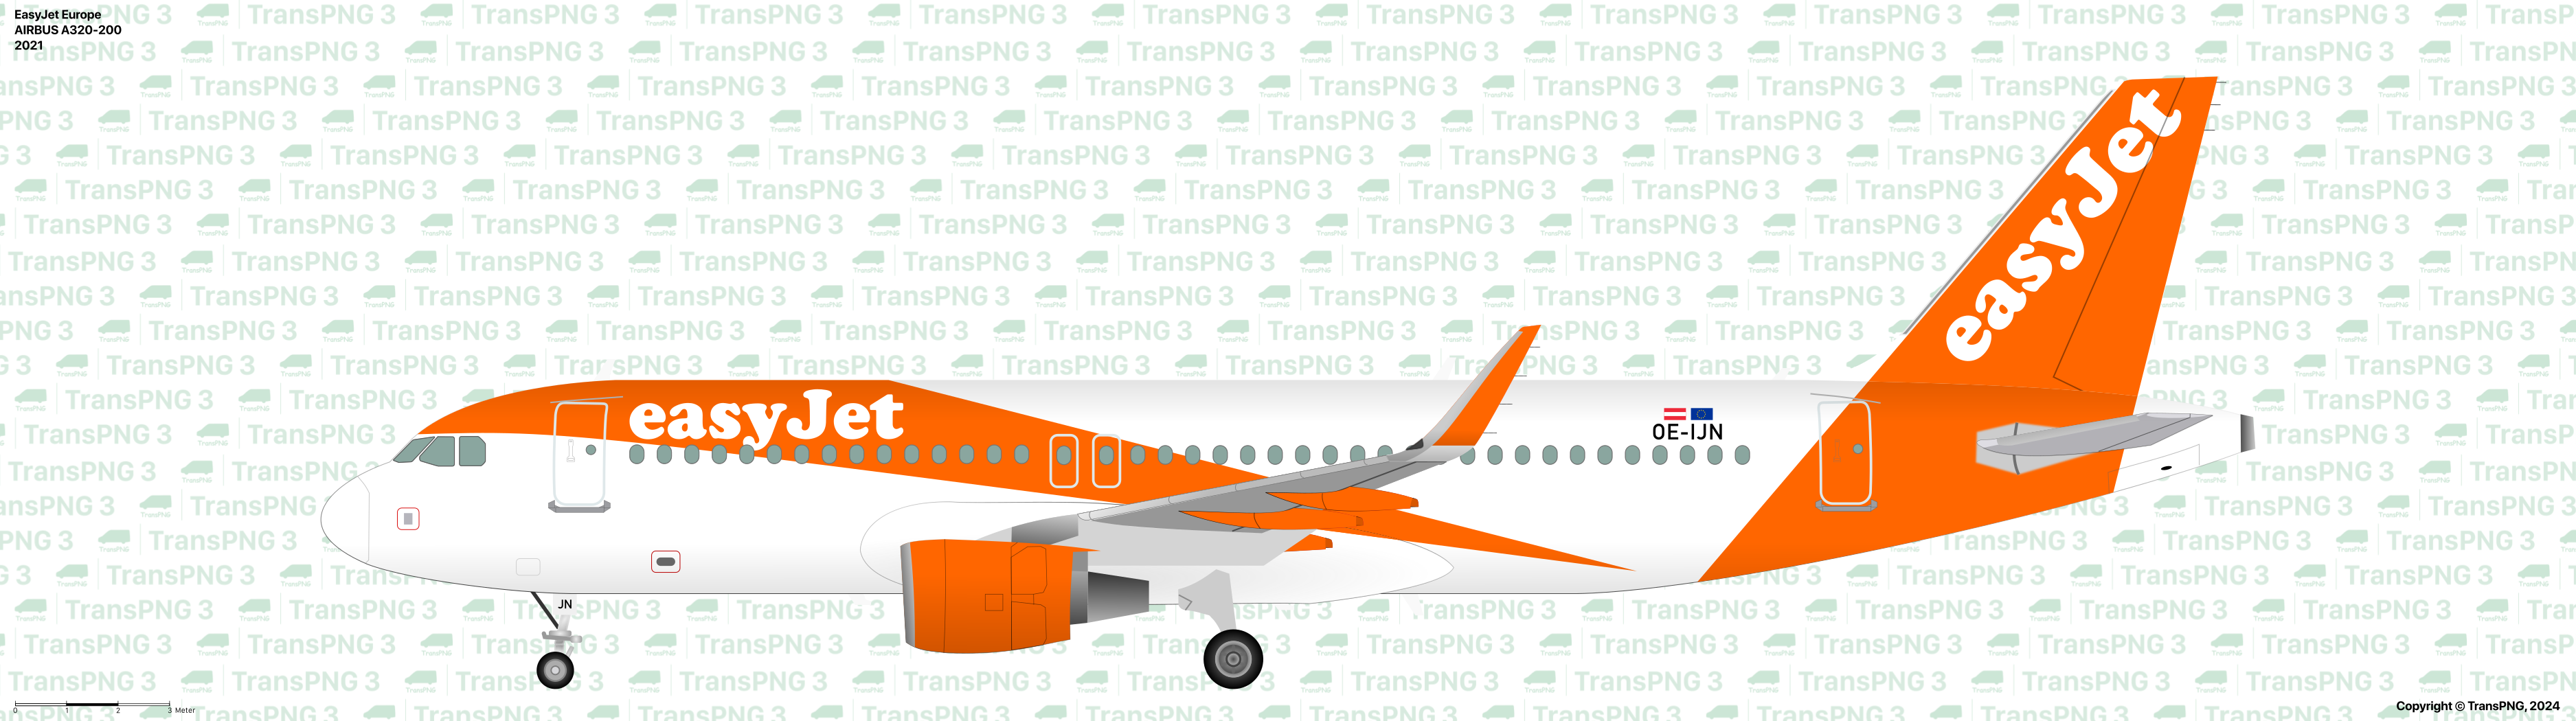 TransPNG.net | 分享世界各地多種交通工具的優秀繪圖 - 客機 53481715568_3cc6a5074d_o